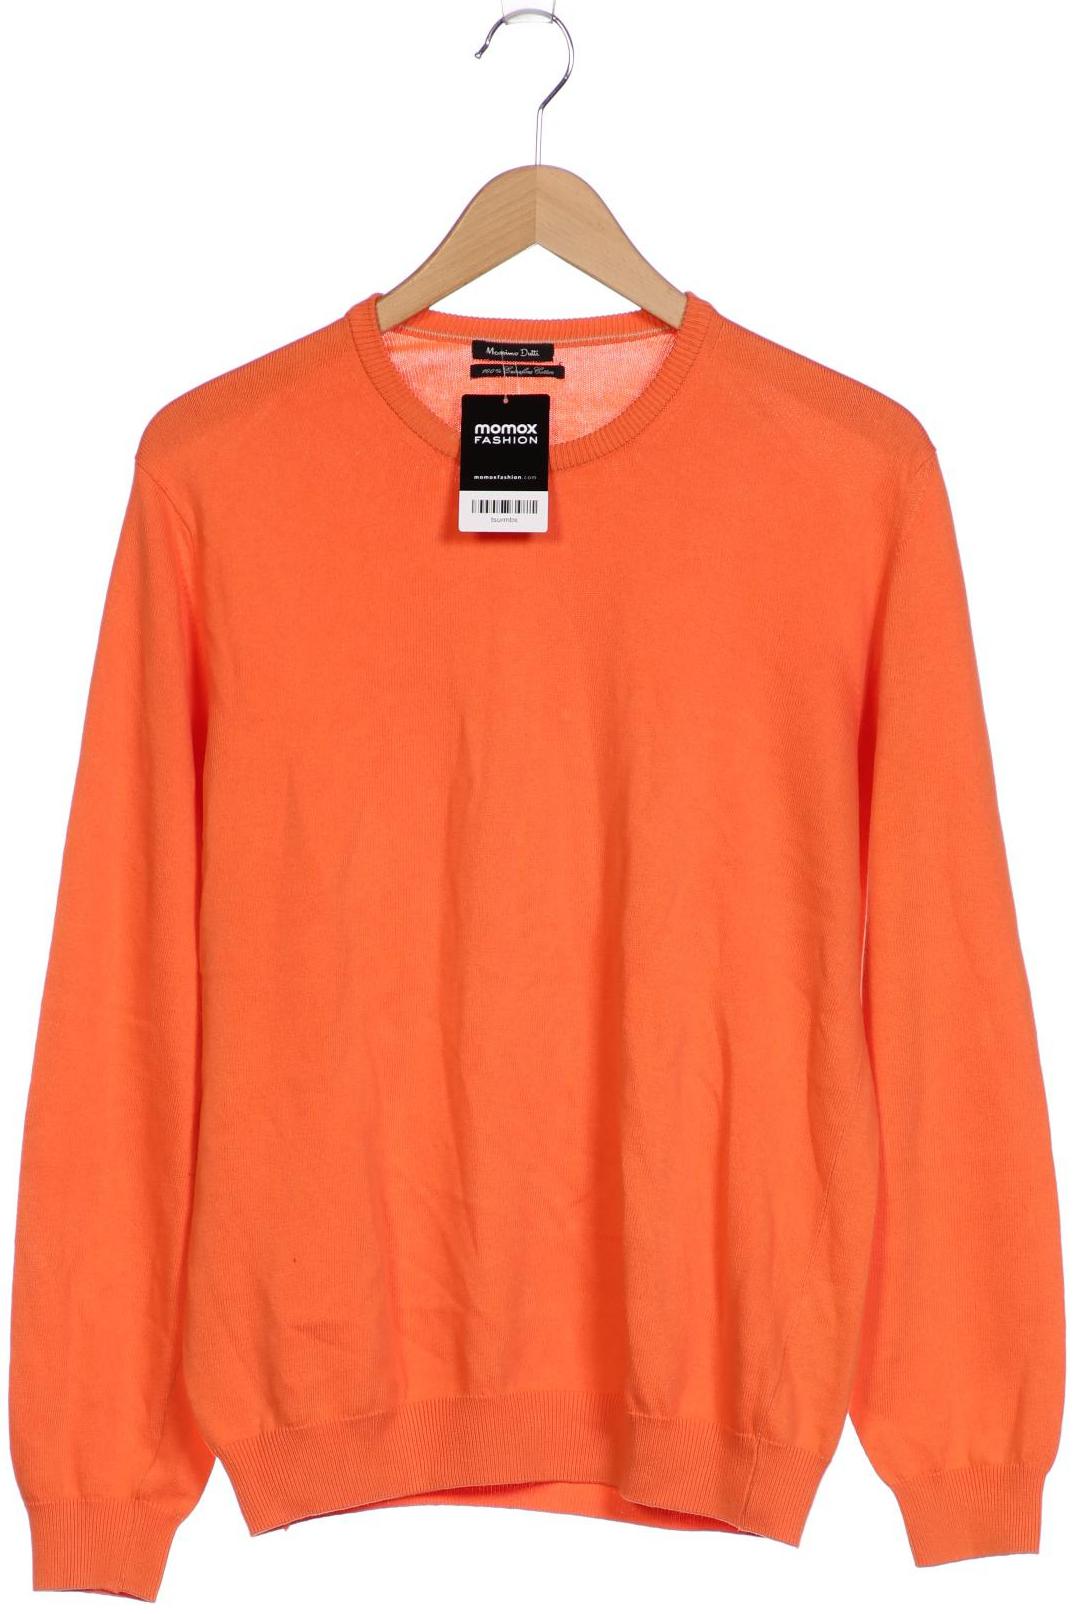 Massimo Dutti Damen Pullover, orange von Massimo Dutti